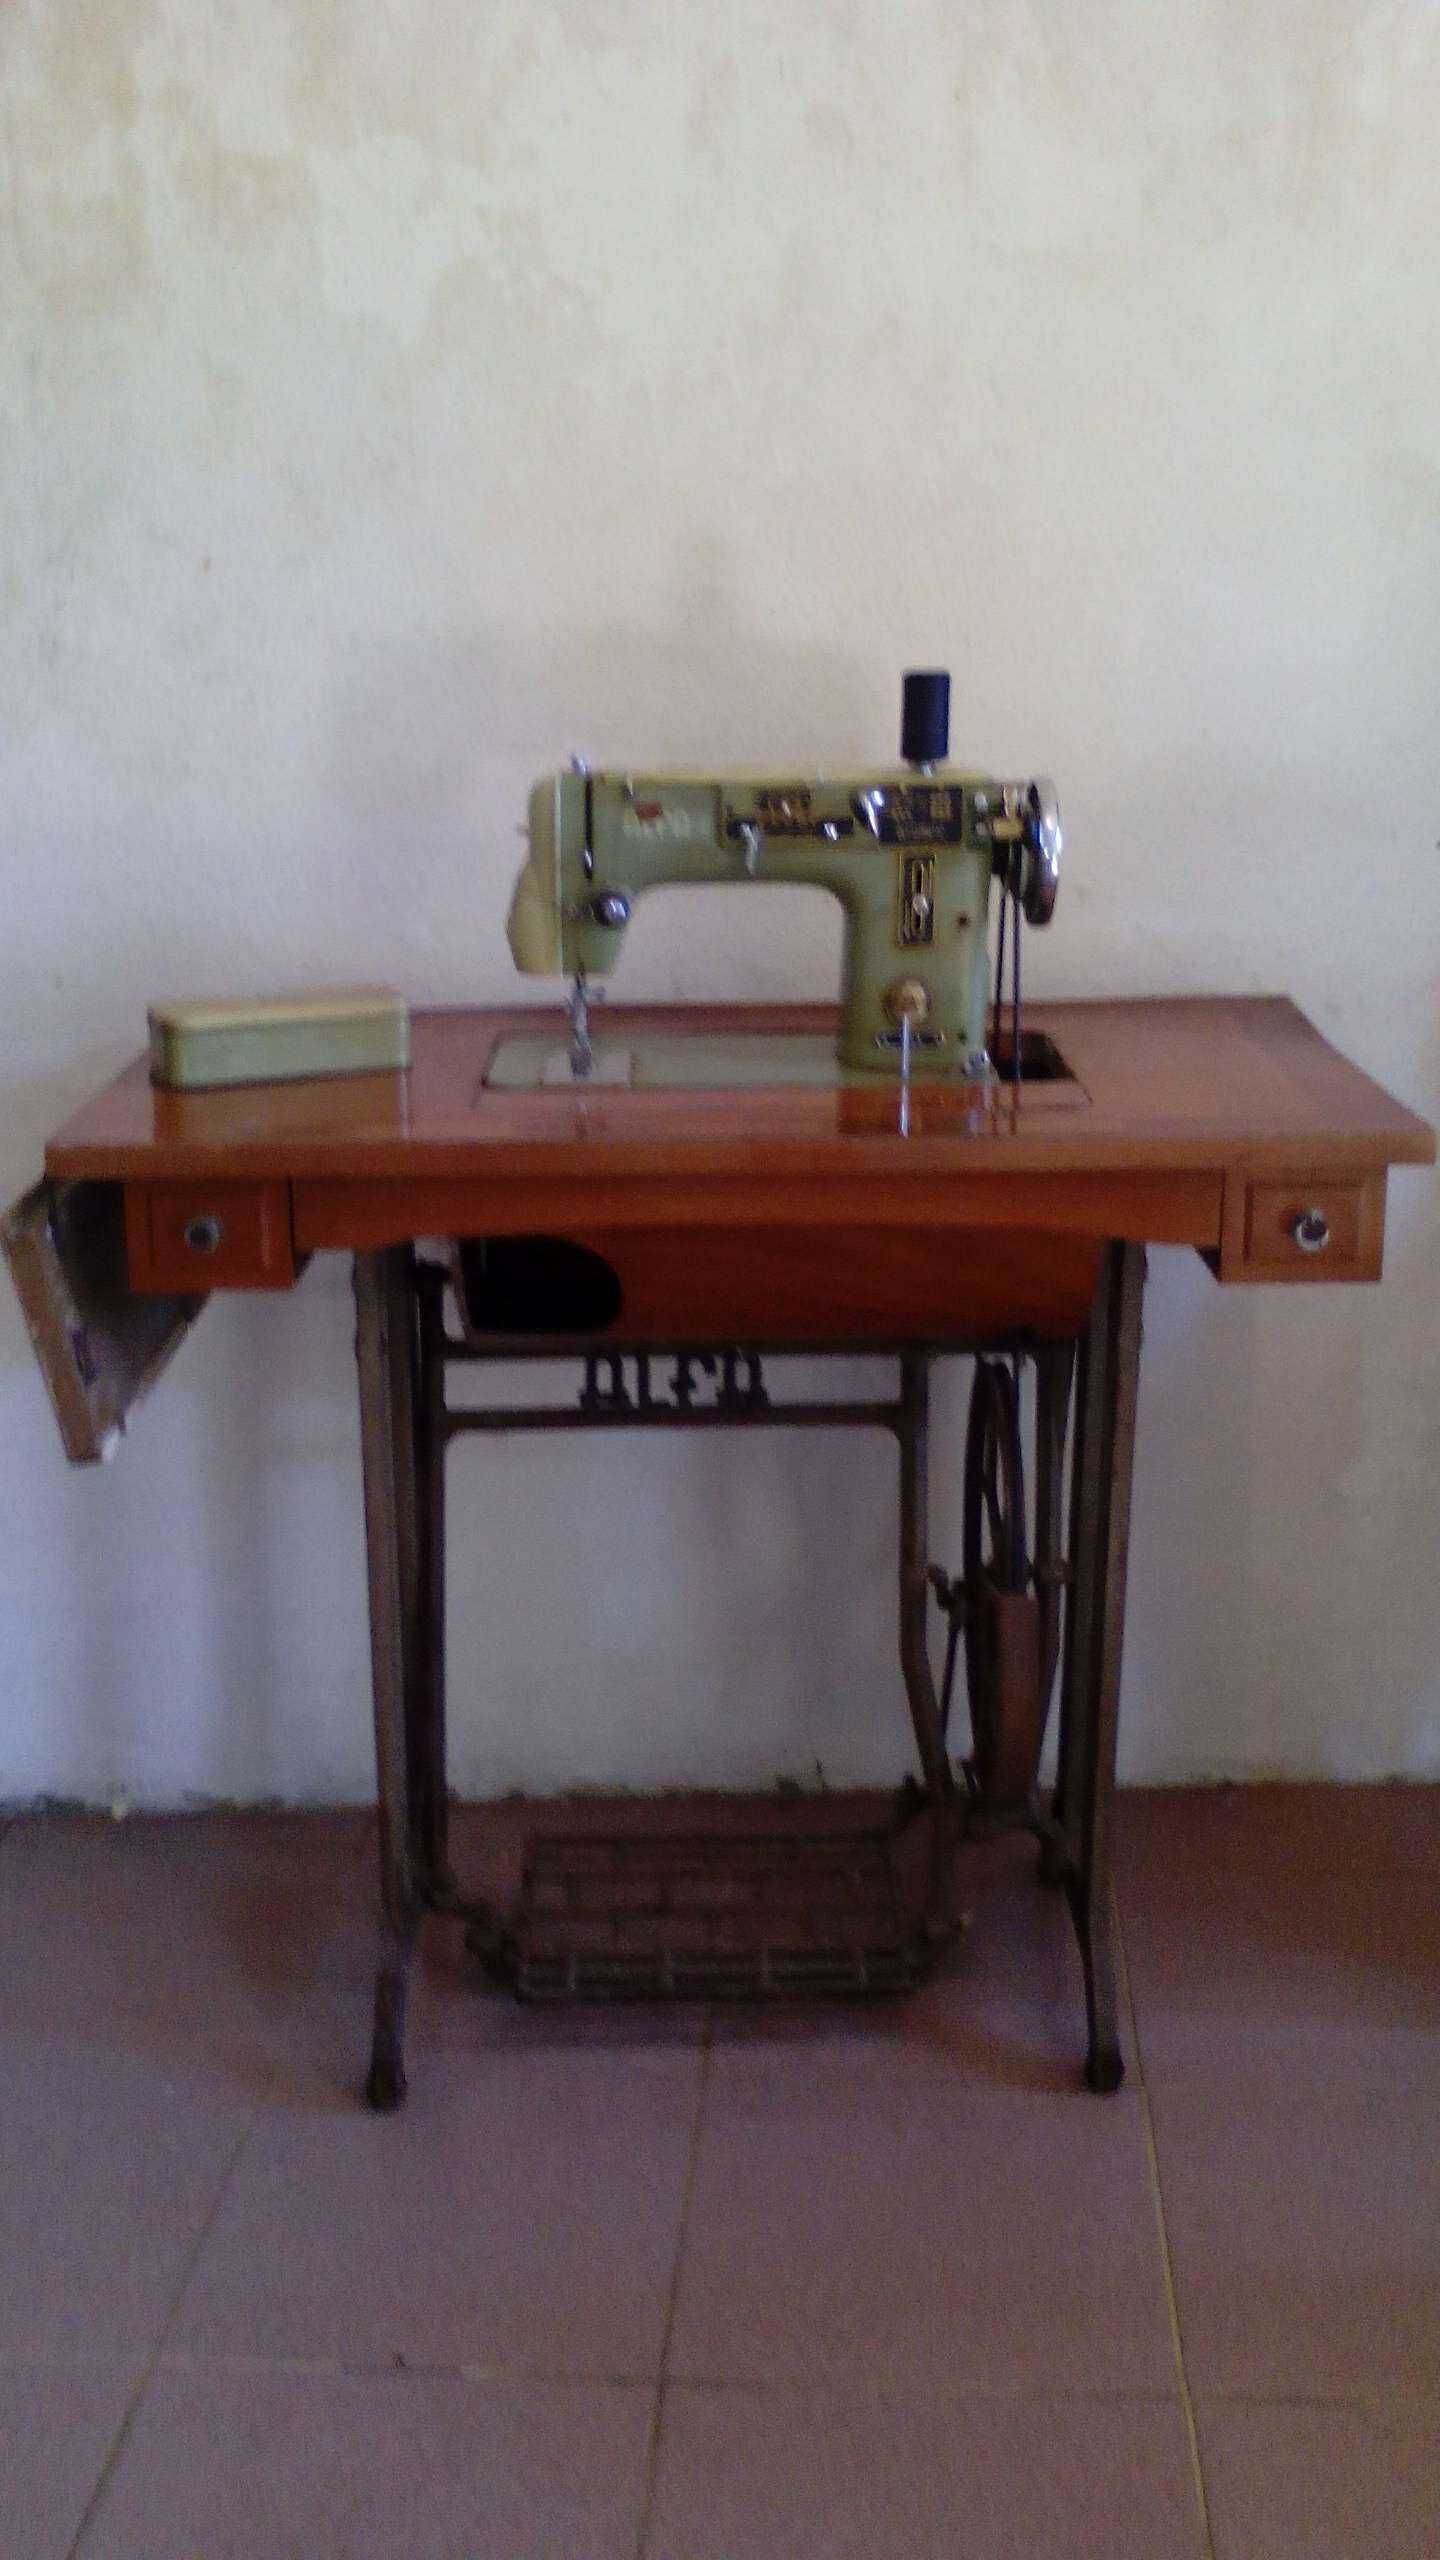 Vendo máquina de costura da marca Alfa